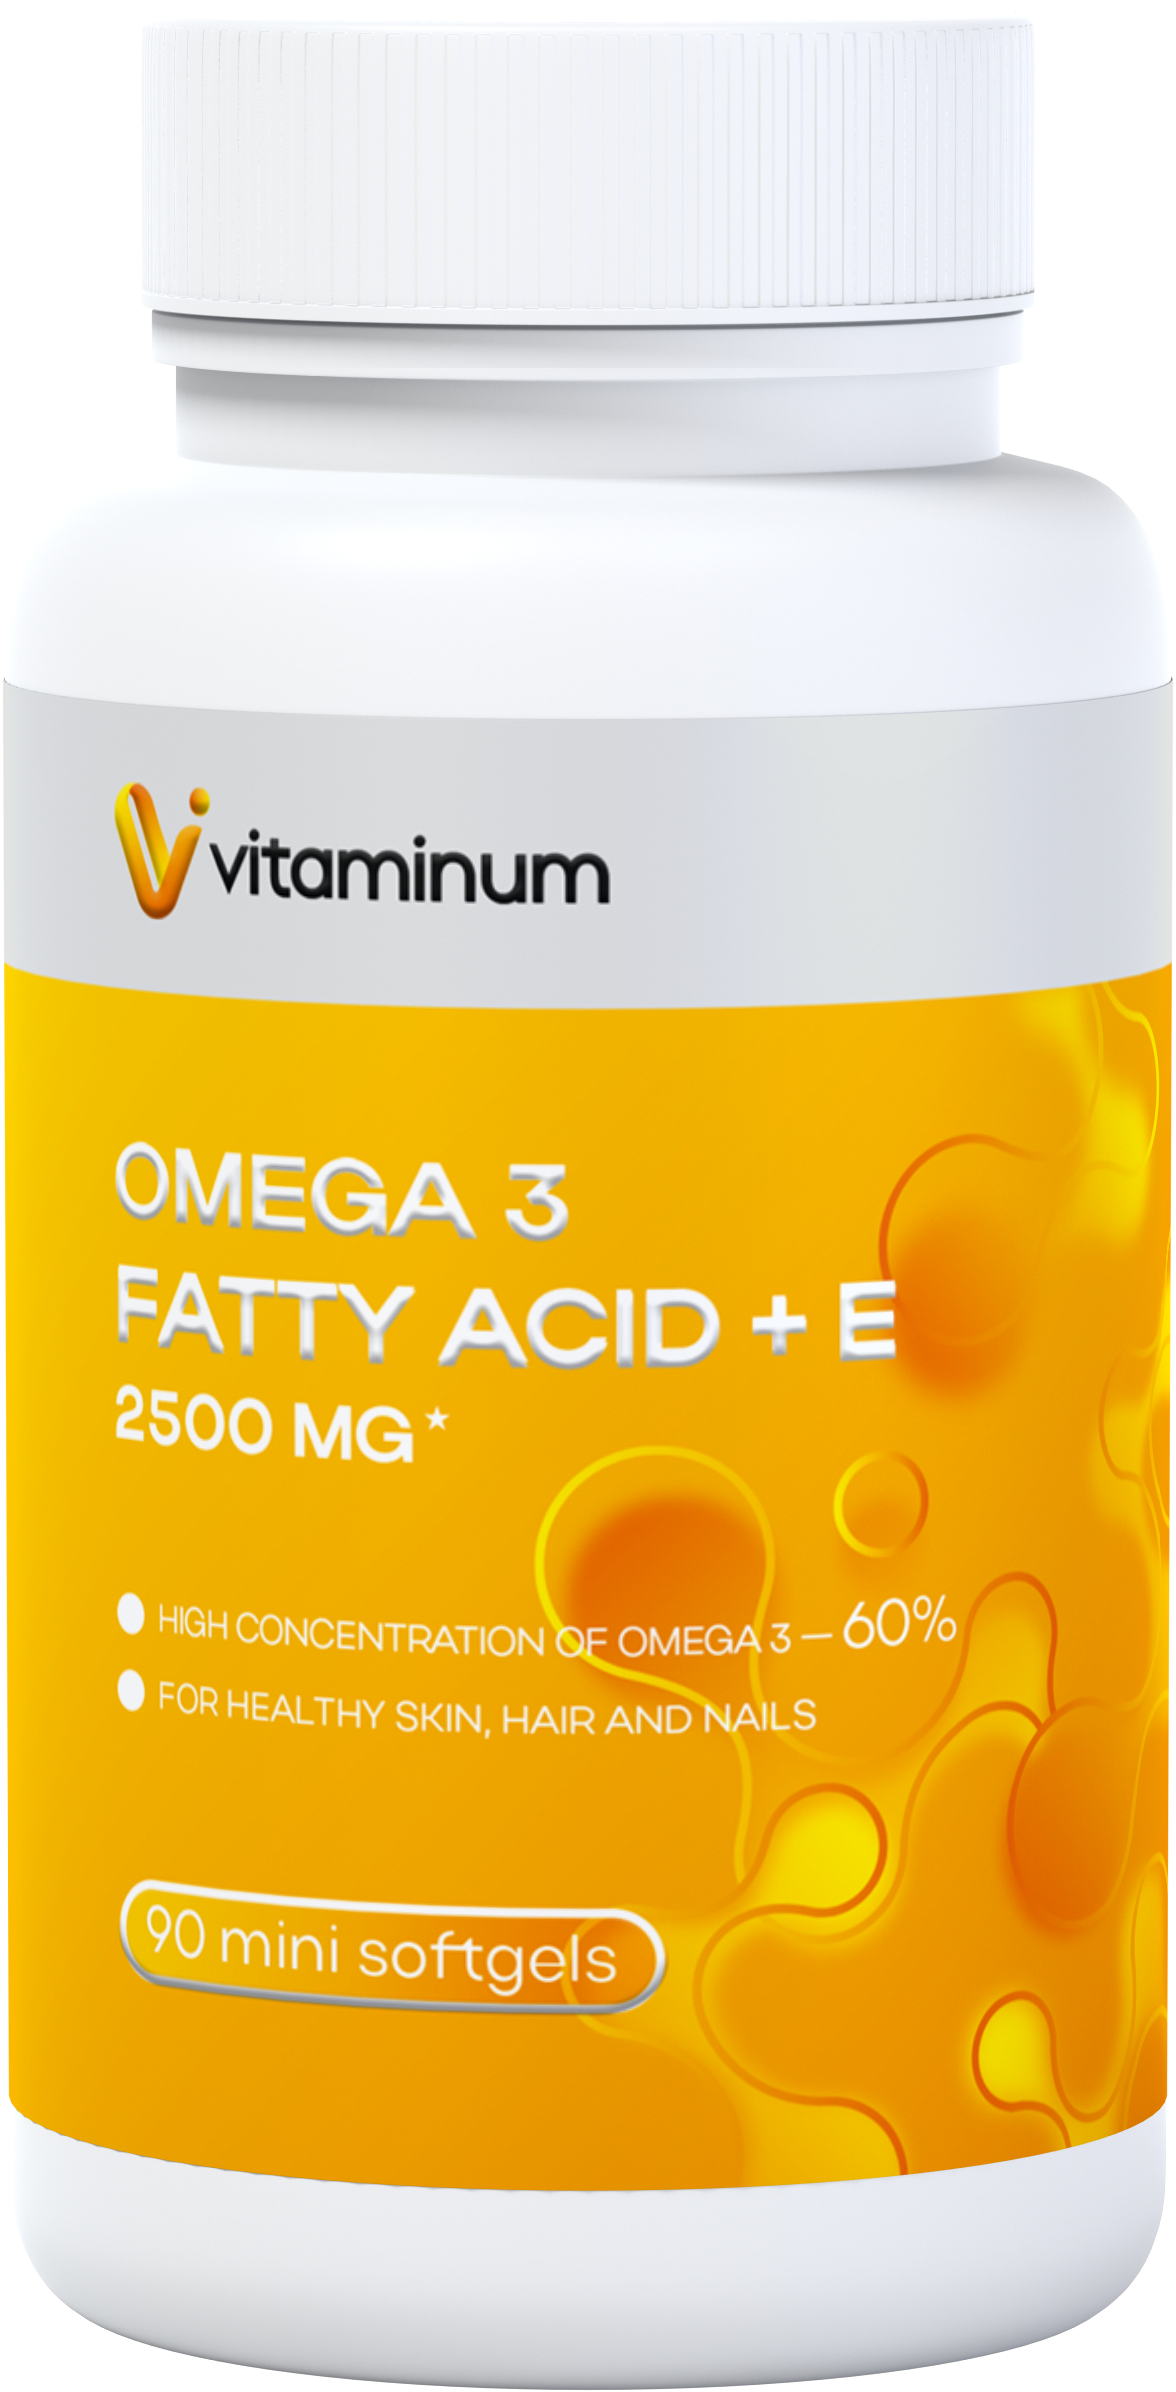  Vitaminum ОМЕГА 3 60% + витамин Е (2500 MG*) 90 капсул 700 мг   в Соликамске